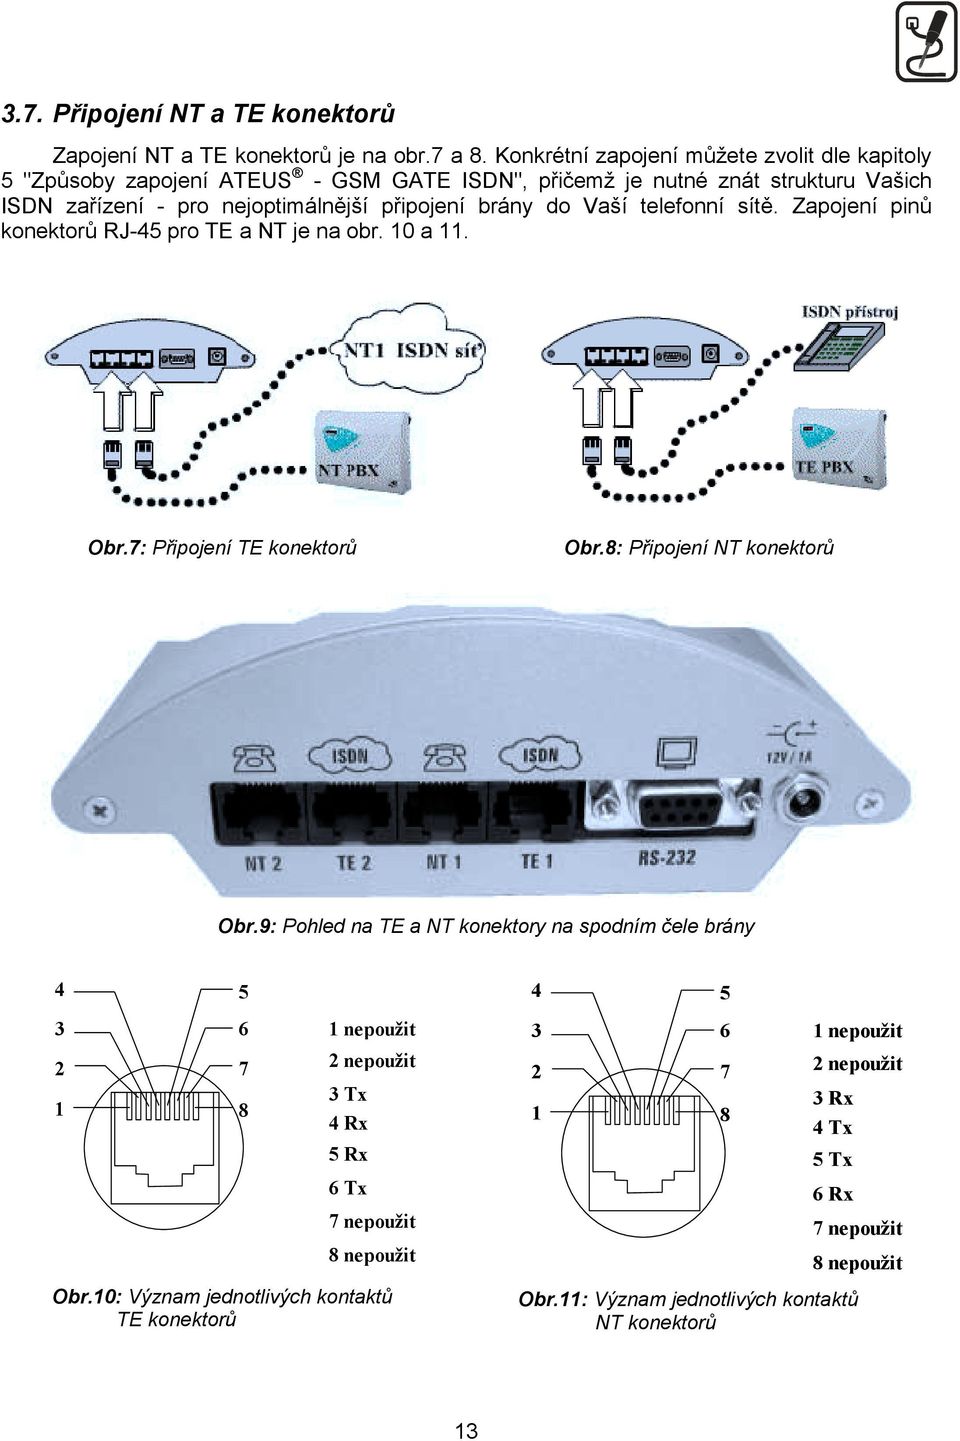 do Vaší telefonní sítě. Zapojení pinů konektorů RJ-45 pro TE a NT je na obr. 10 a 11. Obr.7: Připojení TE konektorů Obr.8: Připojení NT konektorů Obr.